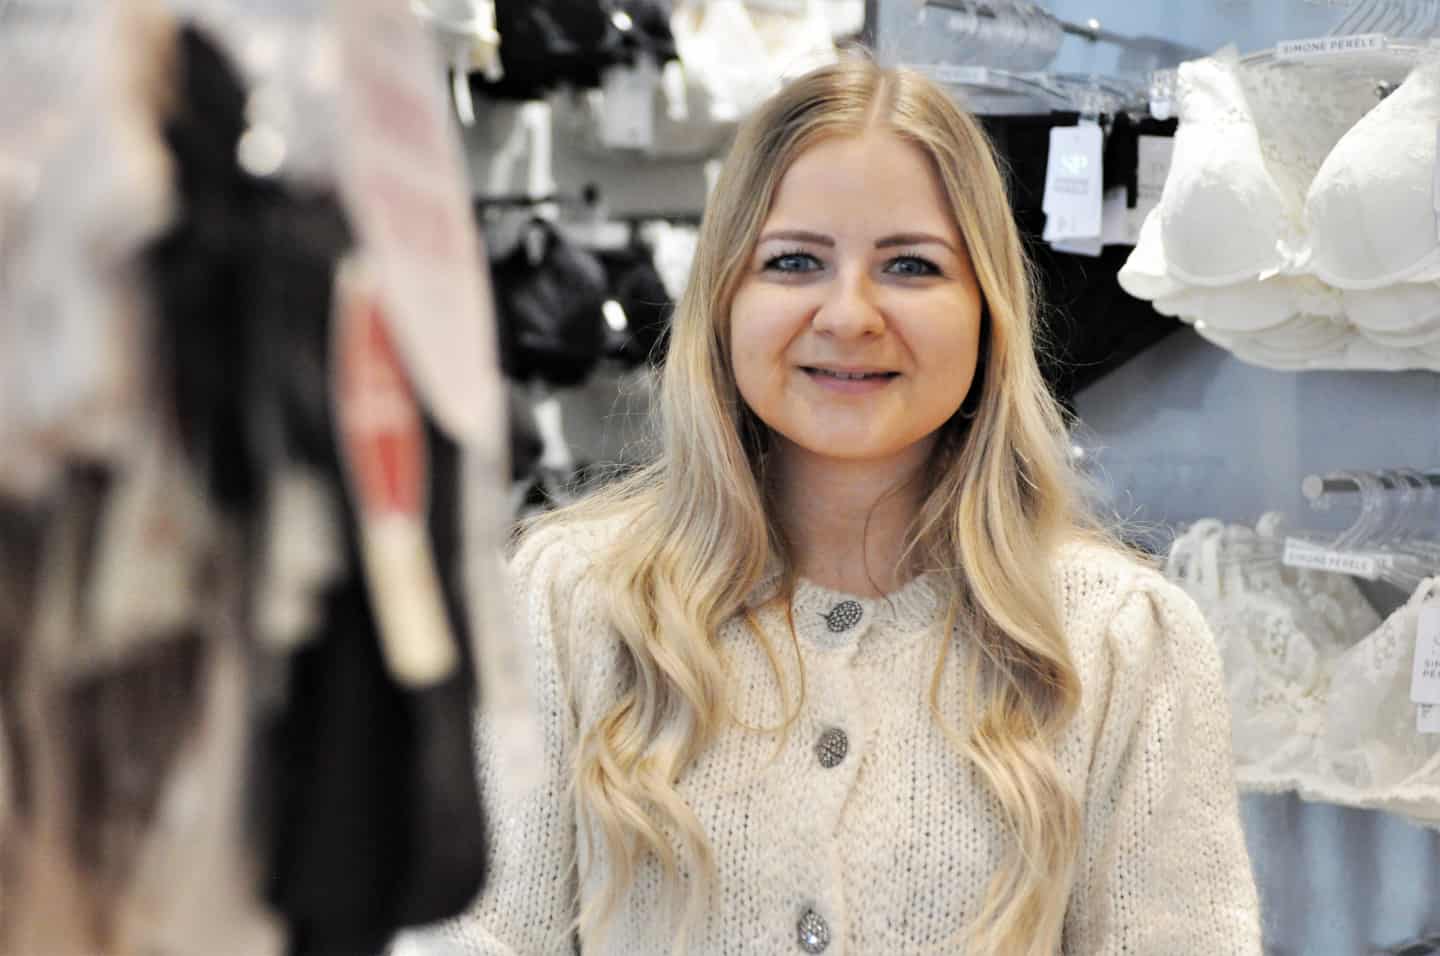 kontroversiel Rug arbejdsløshed Wunderwear: Undertøjet er kommet frem i lyset | vafo.dk